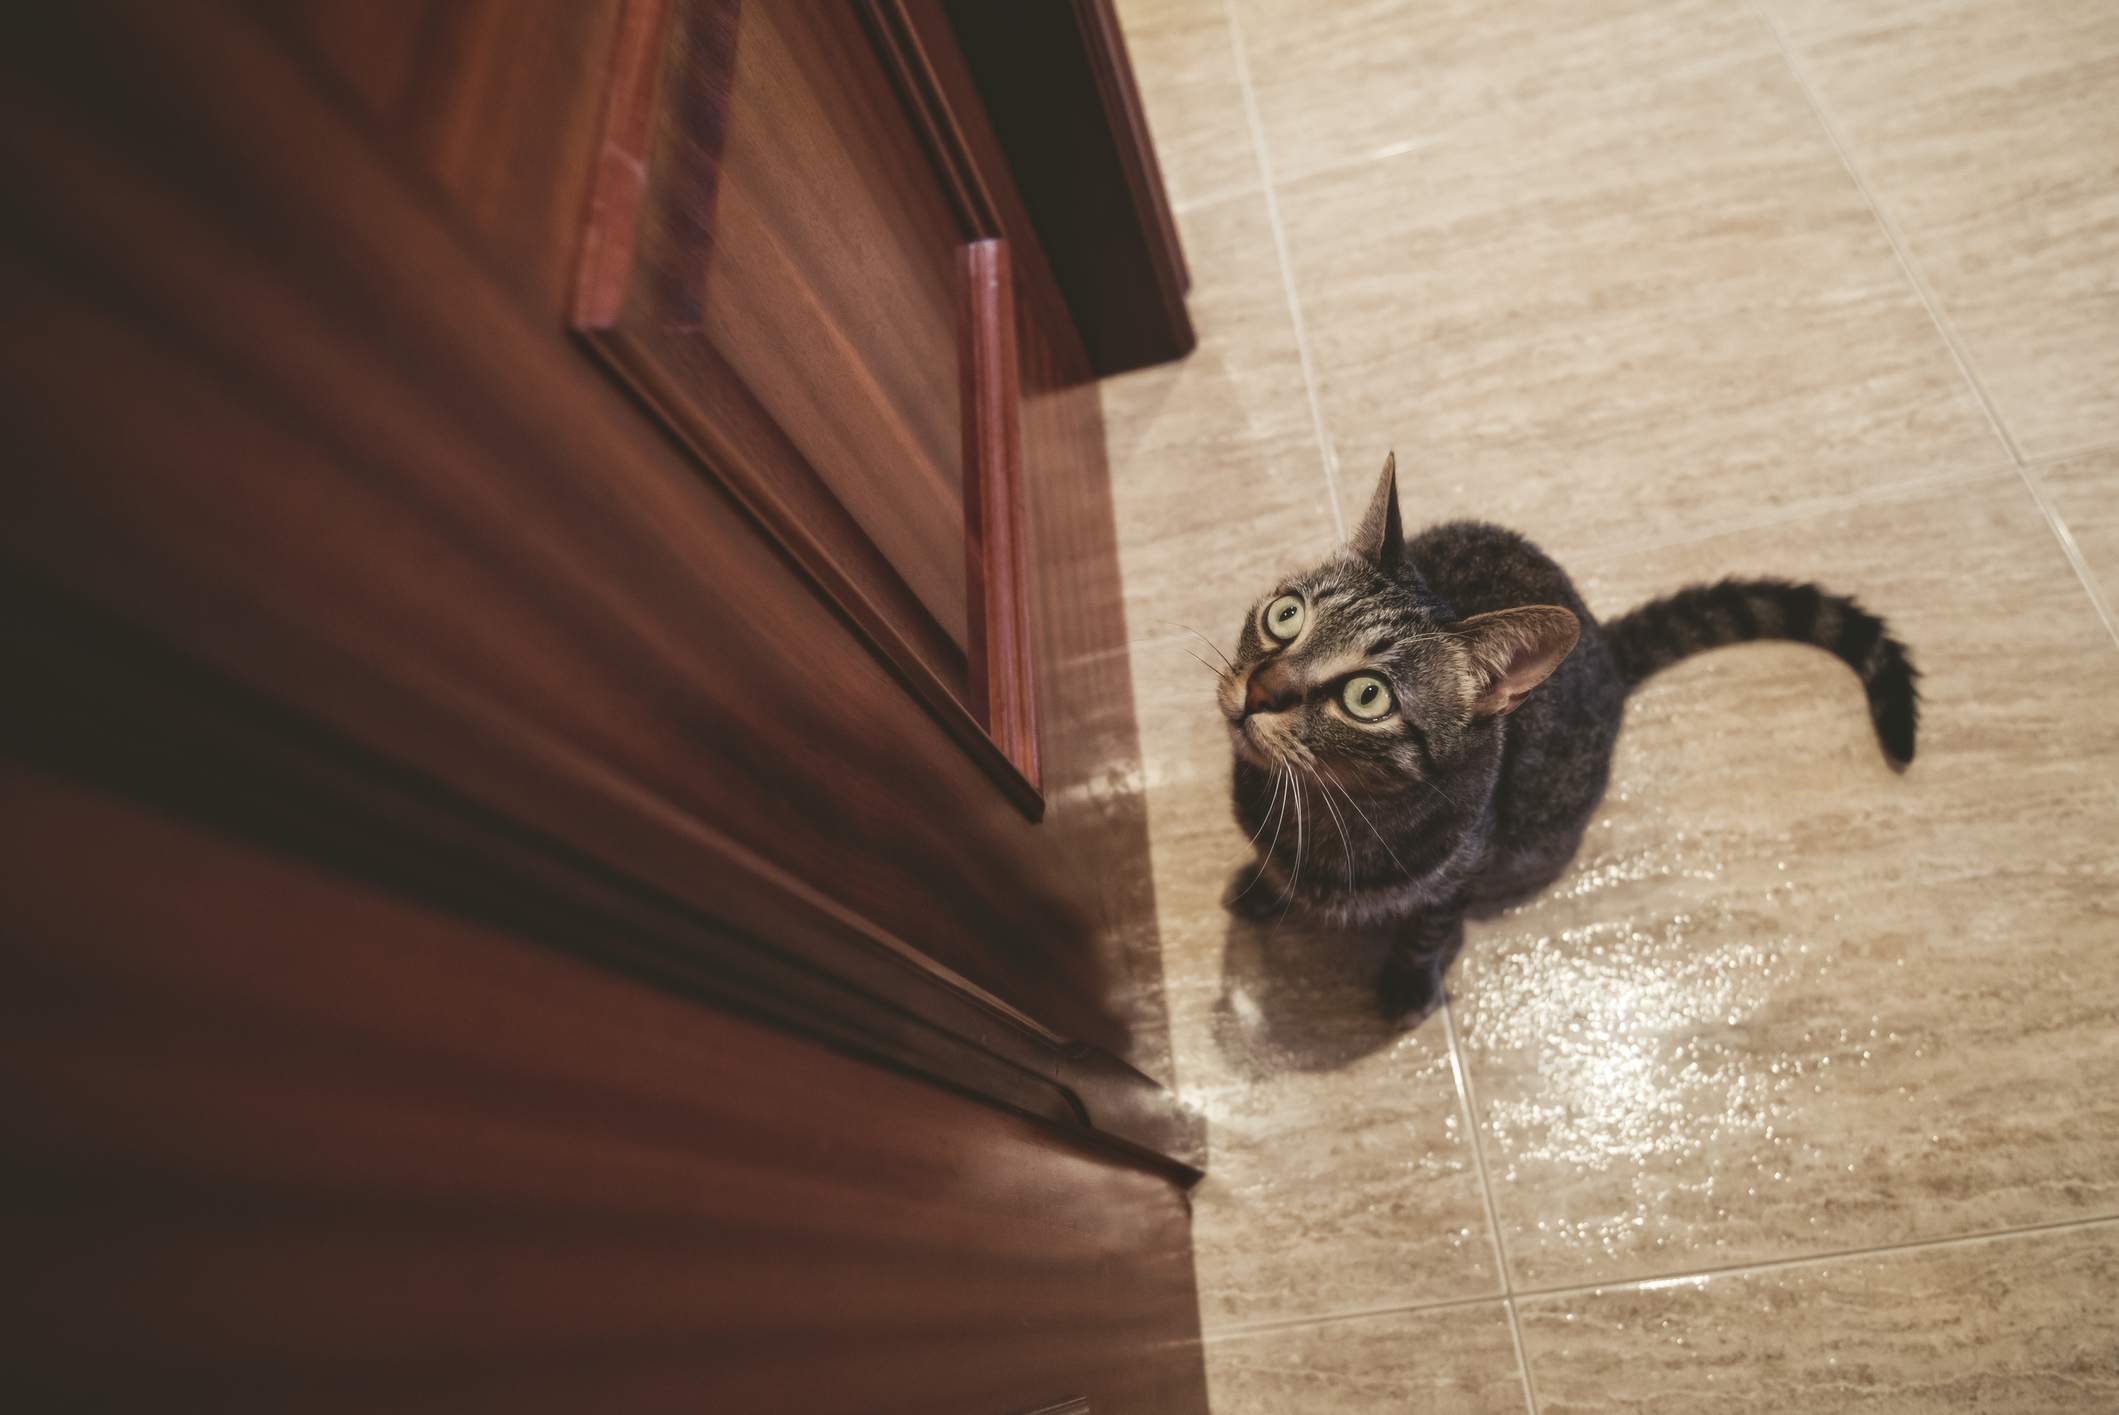 kapalı kapının önünde bekleyen kedi